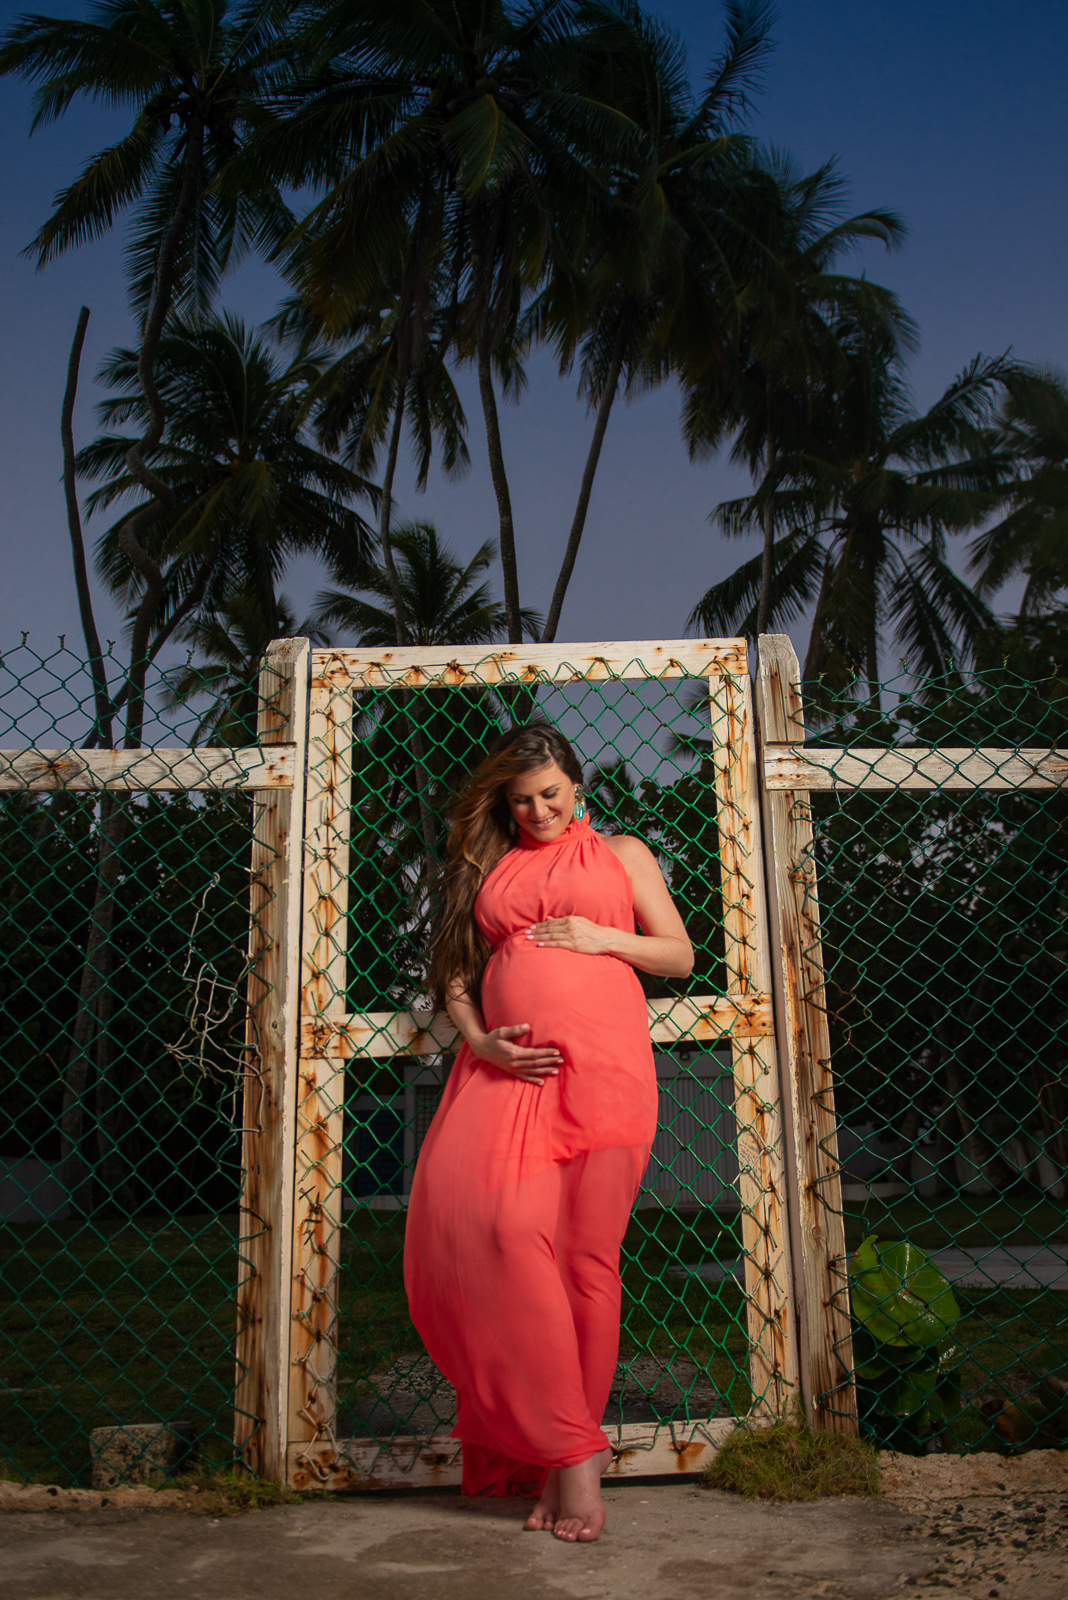 Sesion de fotos de embarazadas en la playa de Juan Dolio, San Pedro de Macoris, Republica Dominicana por el fotografo dominicano